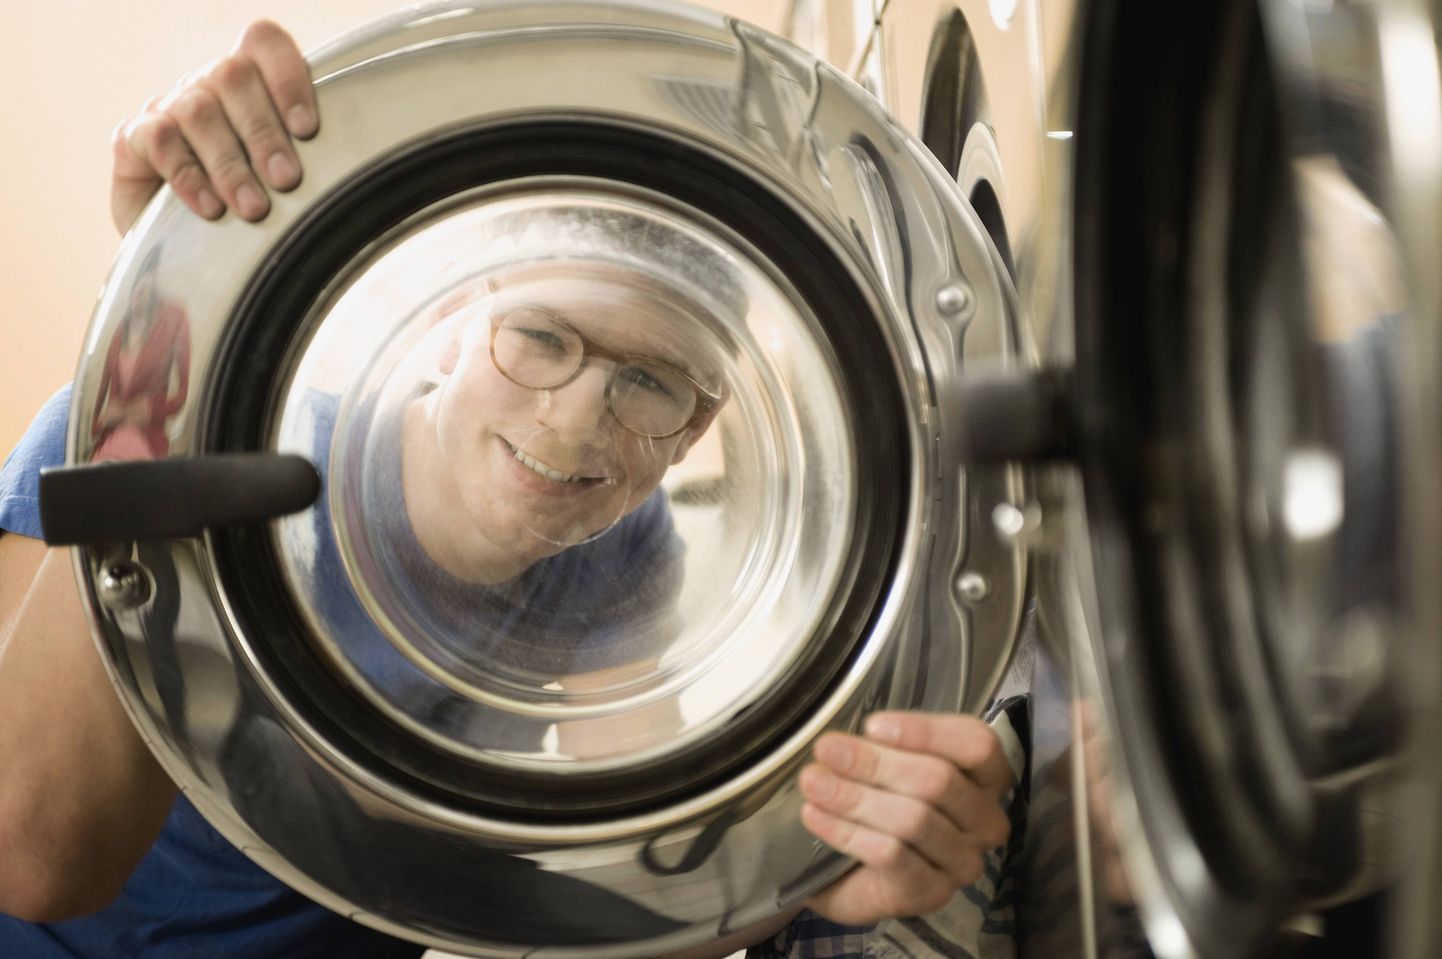 Kas sinu pesumasina tööpõli on samuti lõppemas?